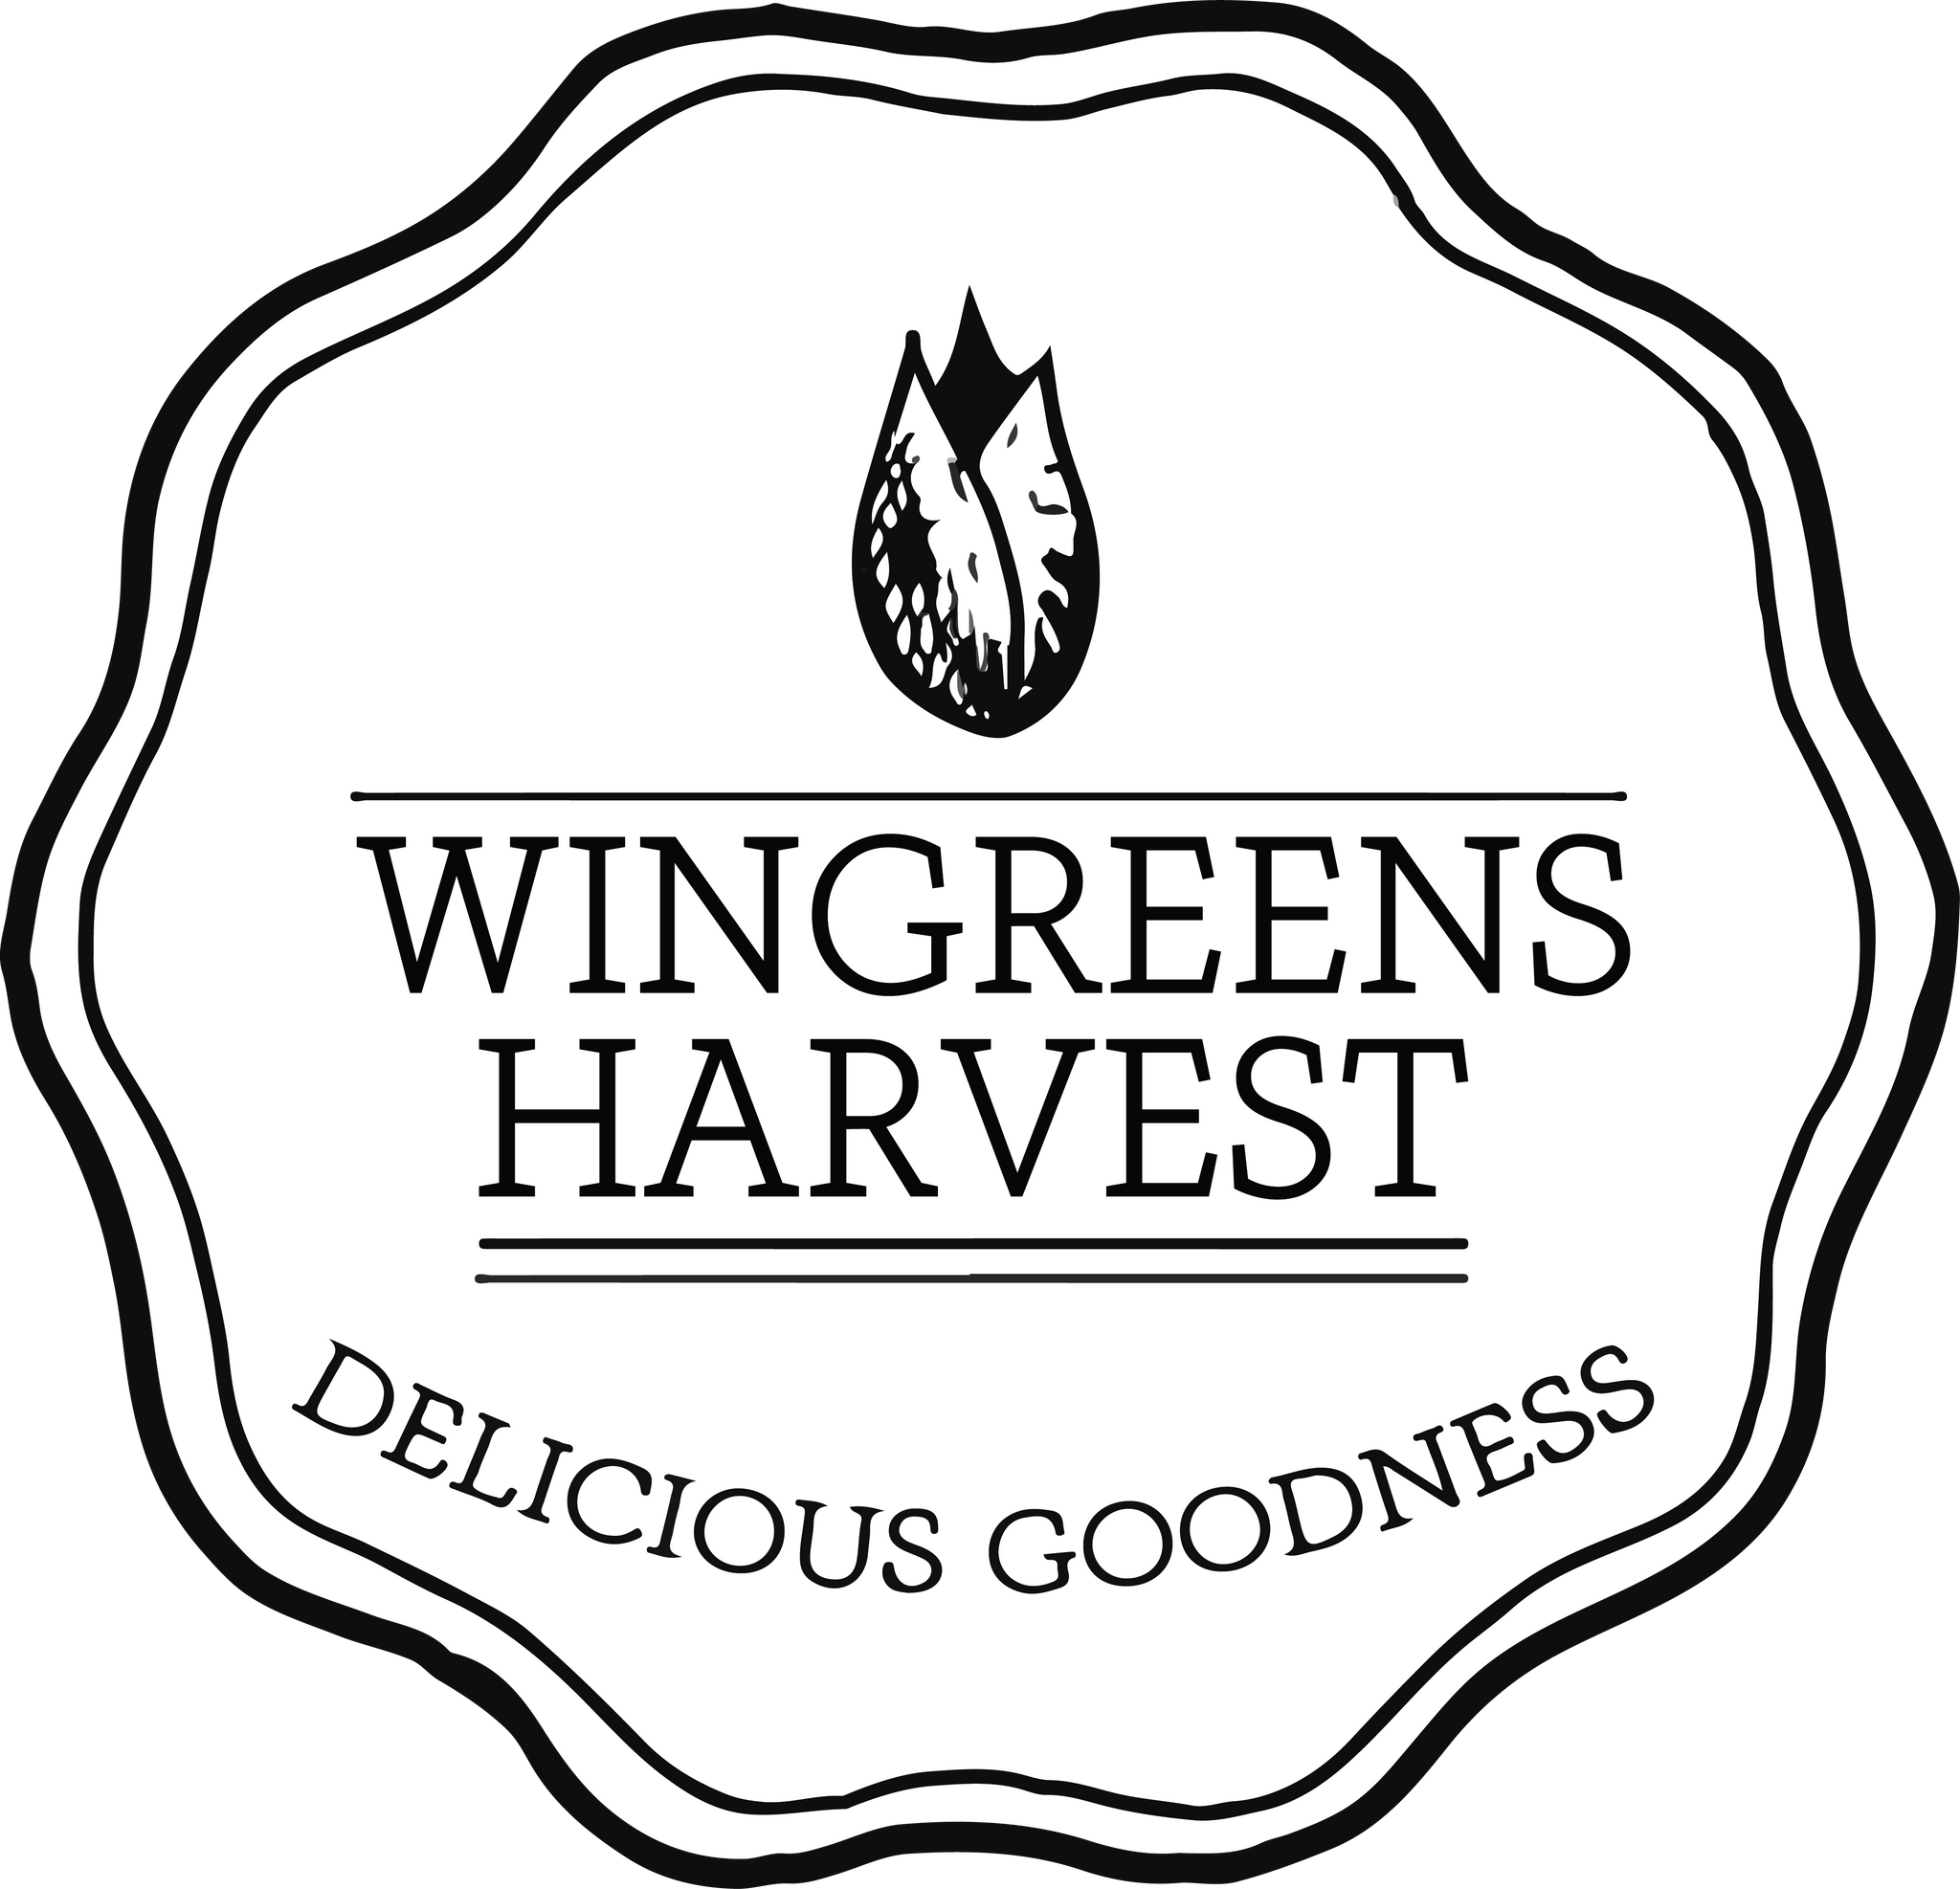 Wingreens Harvest